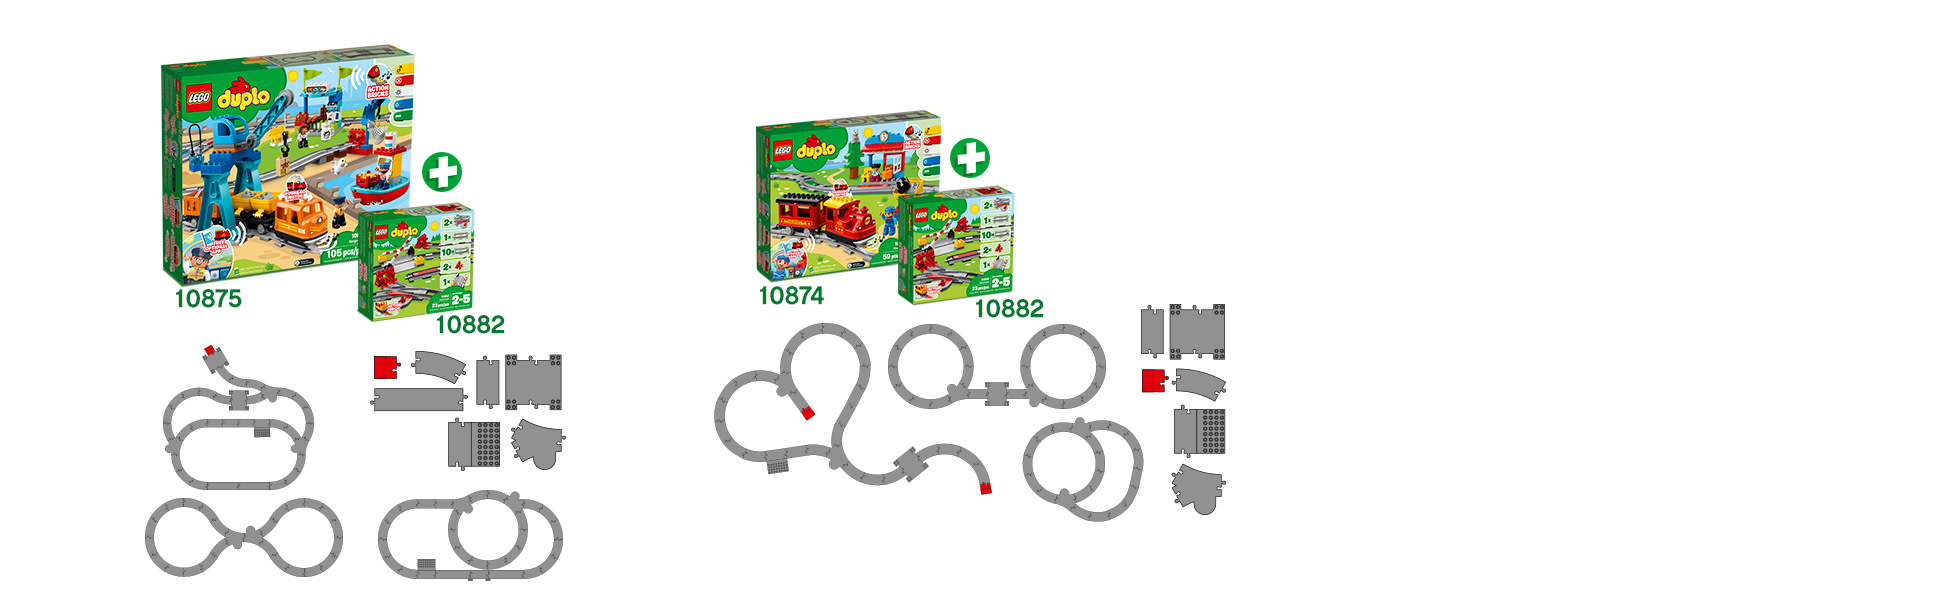 10882 - LEGO® DUPLO Les rails du train